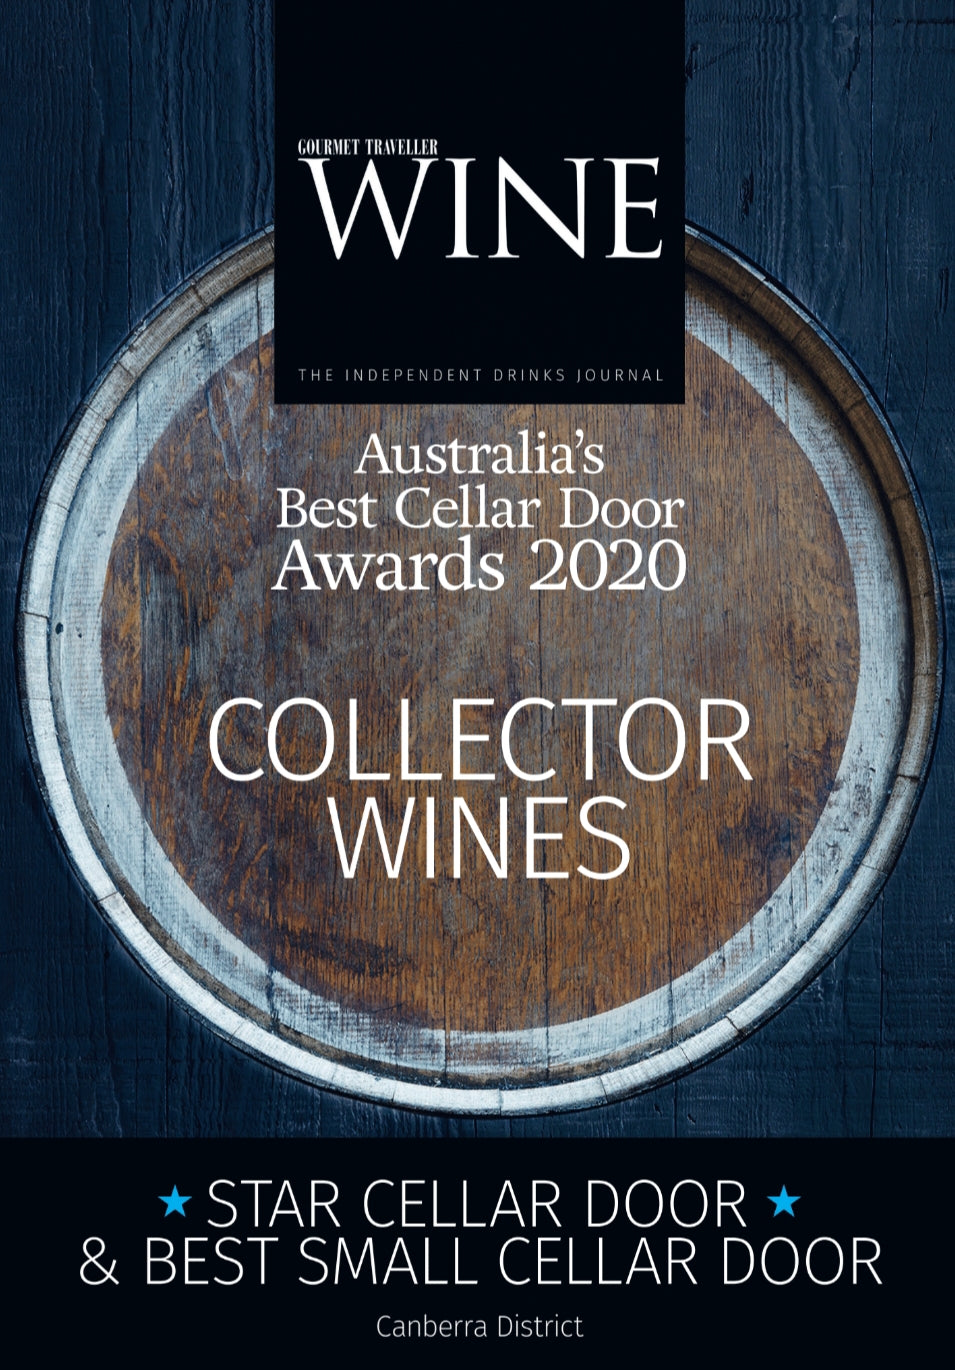 Award reads: Australia's Best Cellar Door Awards 2020 - Collector Wines - Star Cellar Door and Best Small Cellar Door